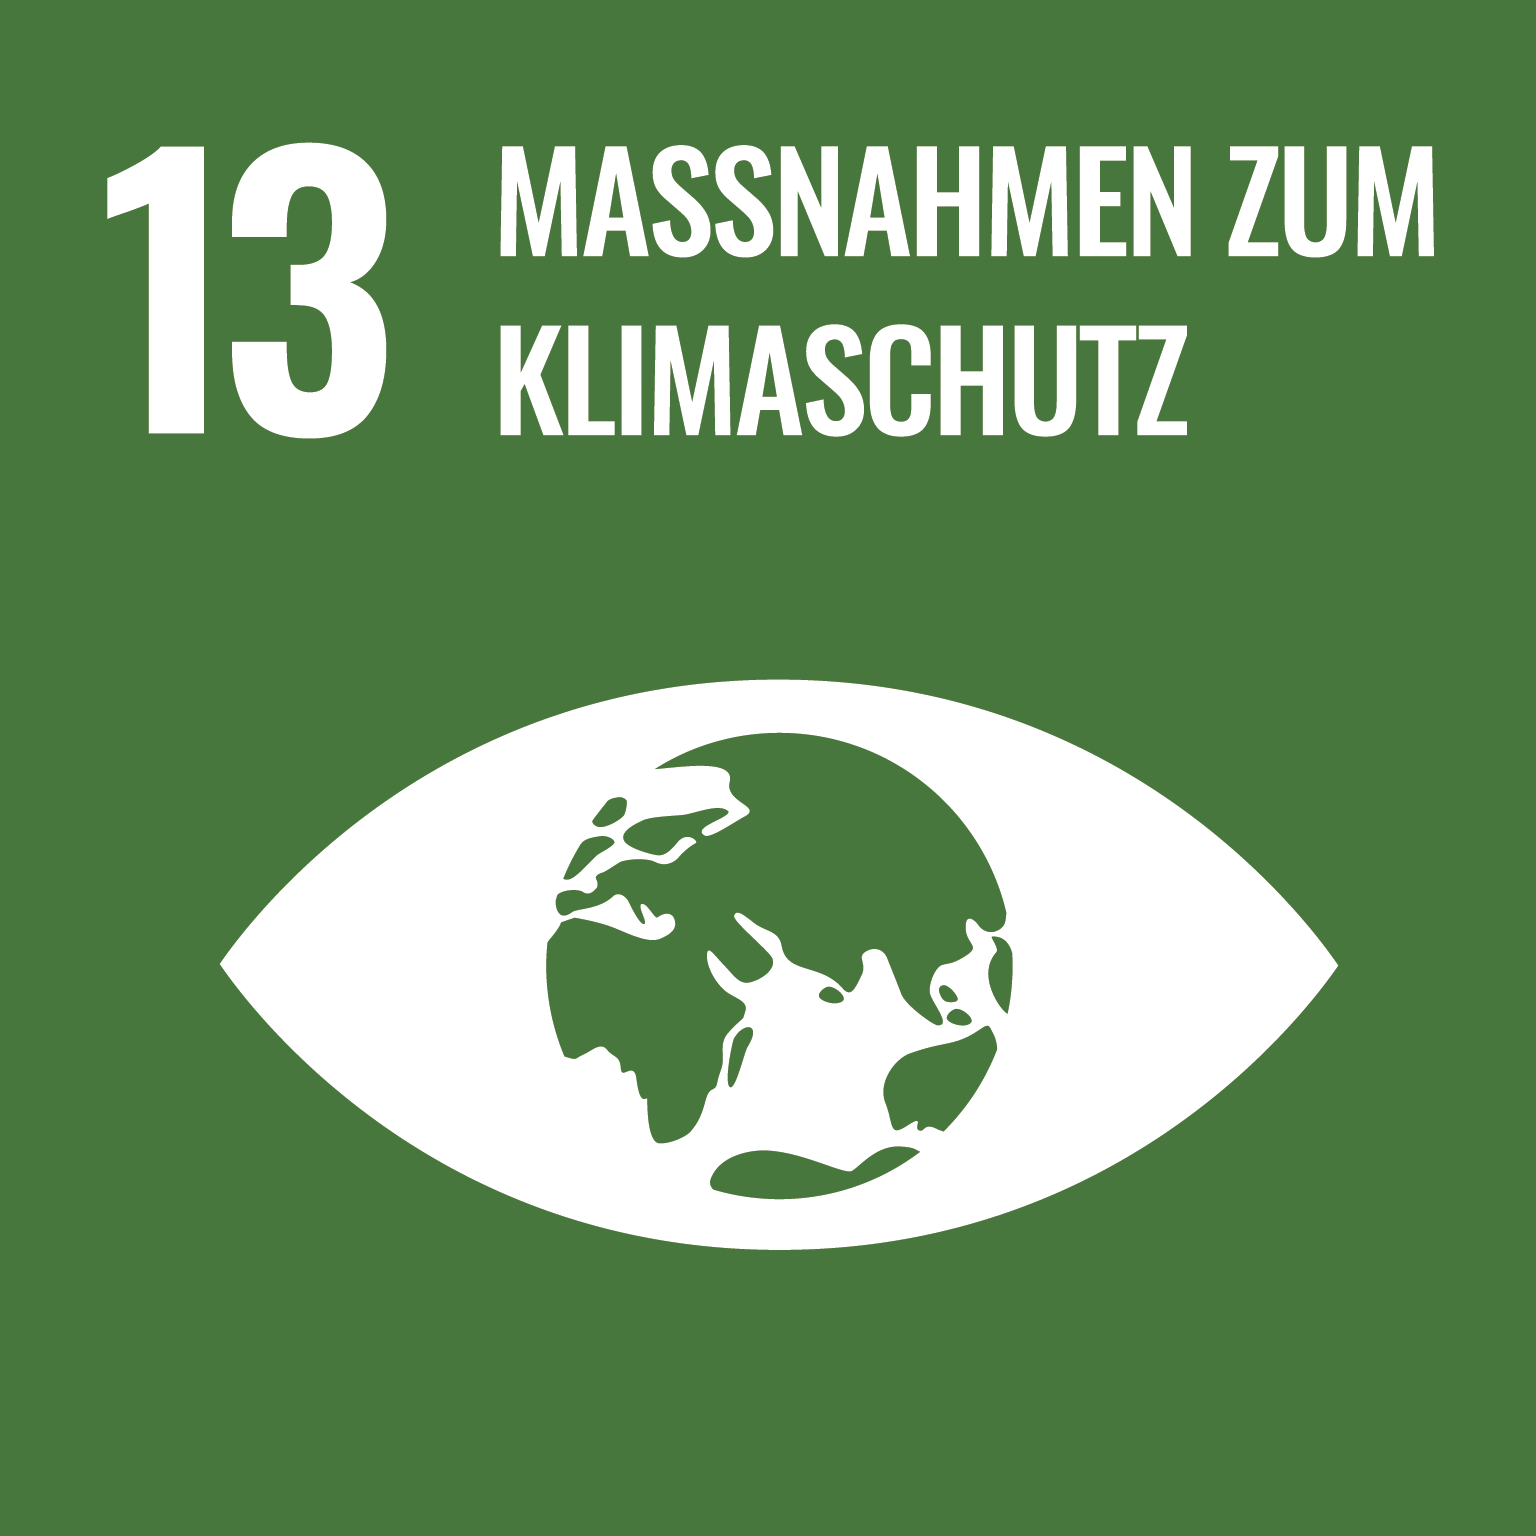 SDG 13-Icon "Massnahmen zum Klimaschutz"